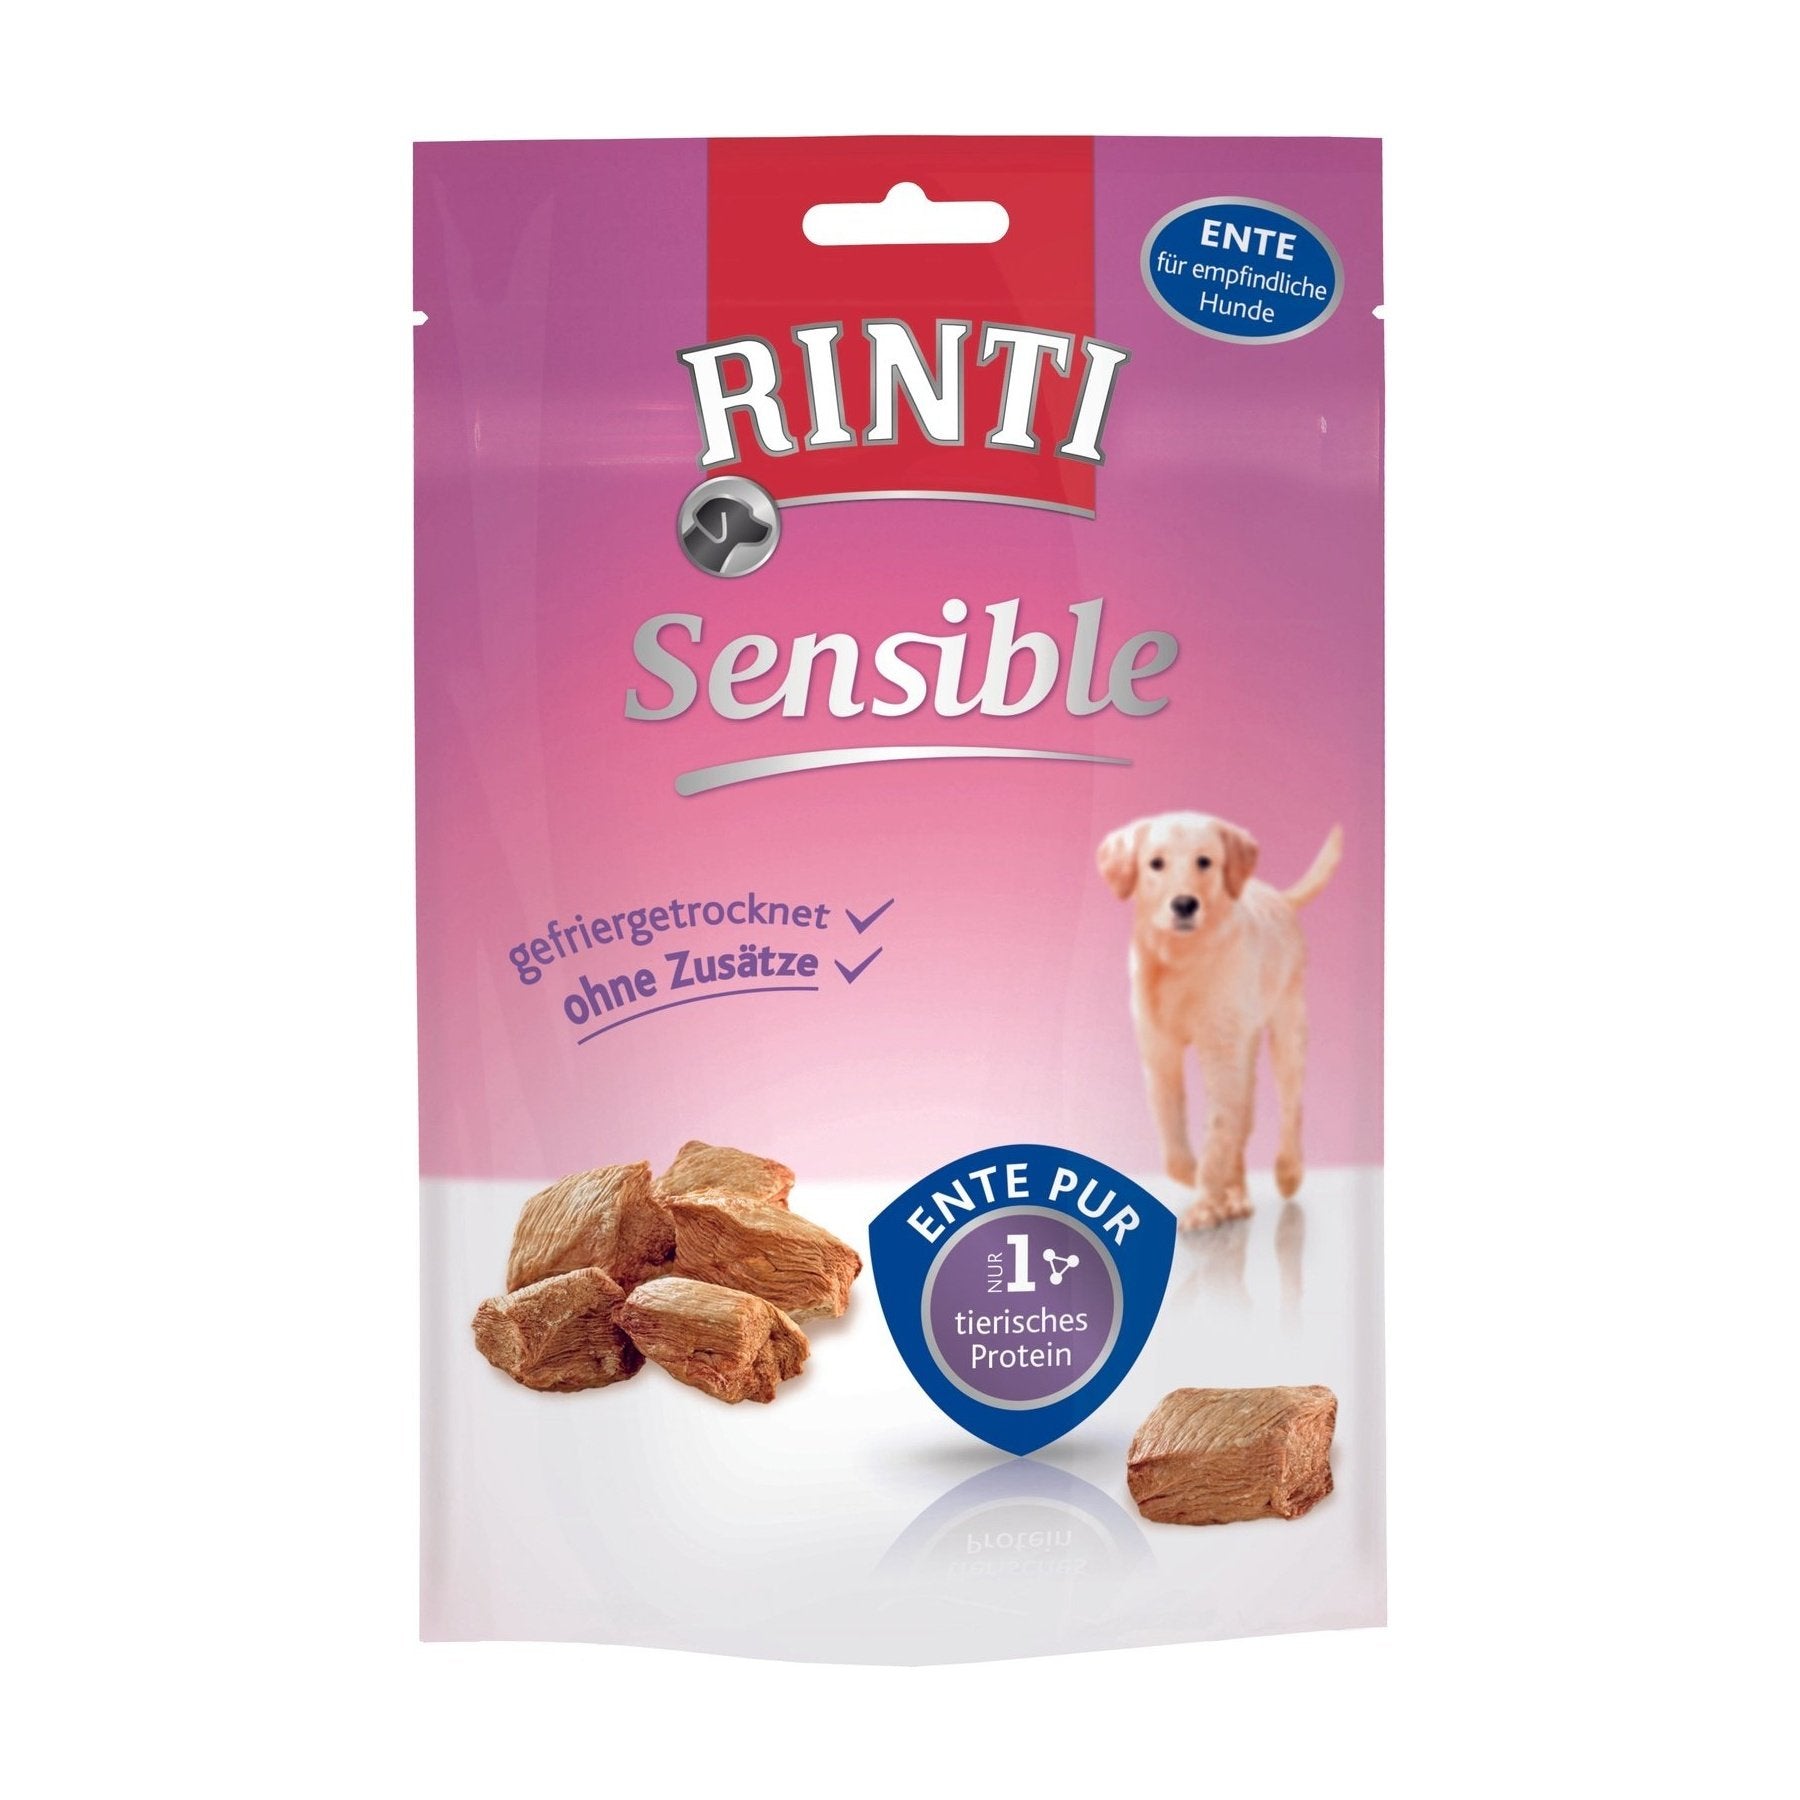 Artikel mit dem Namen Rinti Snack Ente pur im Shop von zoo.de , dem Onlineshop für nachhaltiges Hundefutter und Katzenfutter.